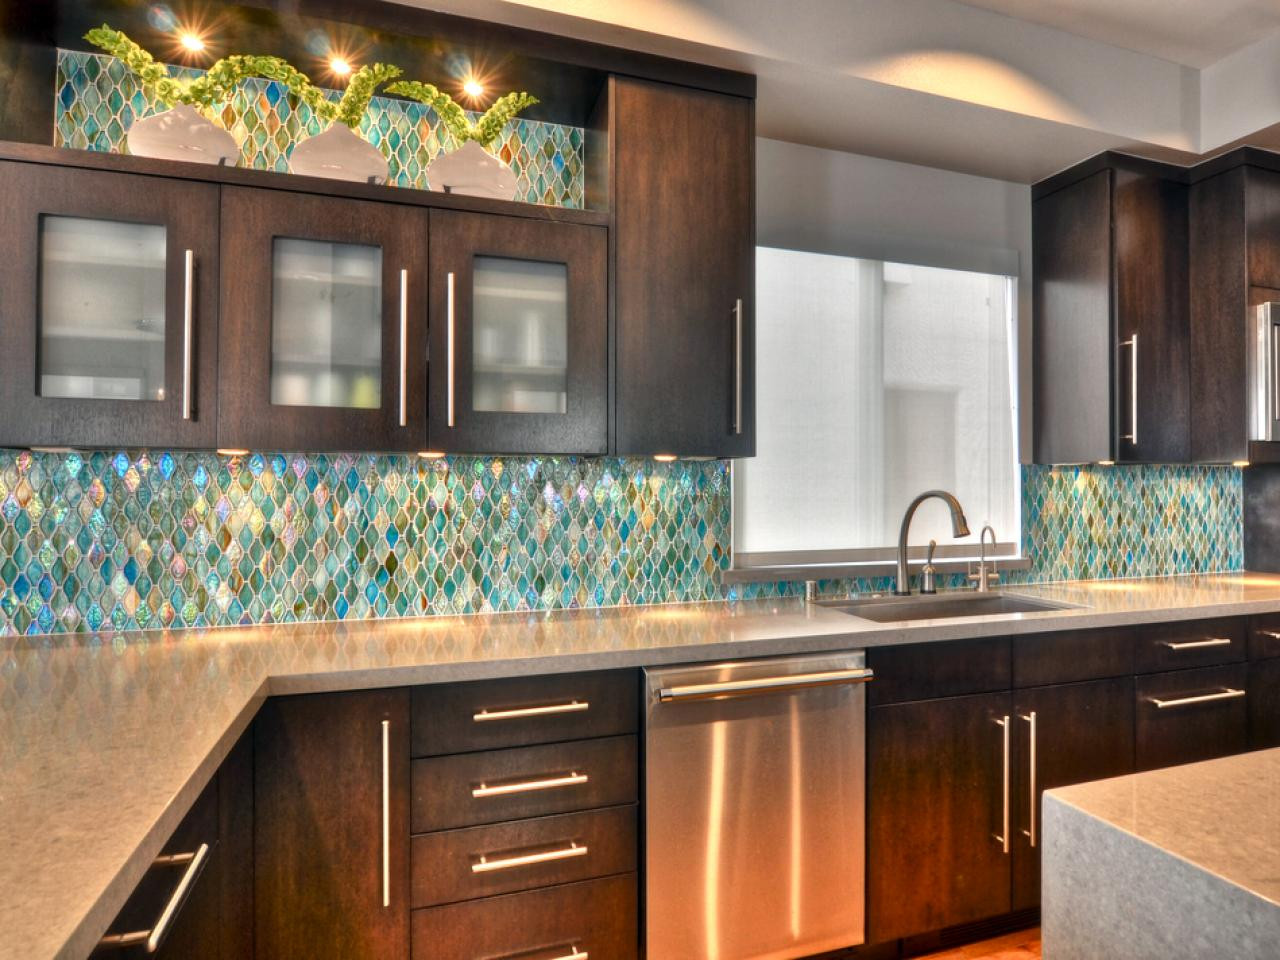 Kitchen With Backsplash Pictures
 75 Kitchen Backsplash Ideas for 2020 Tile Glass Metal etc